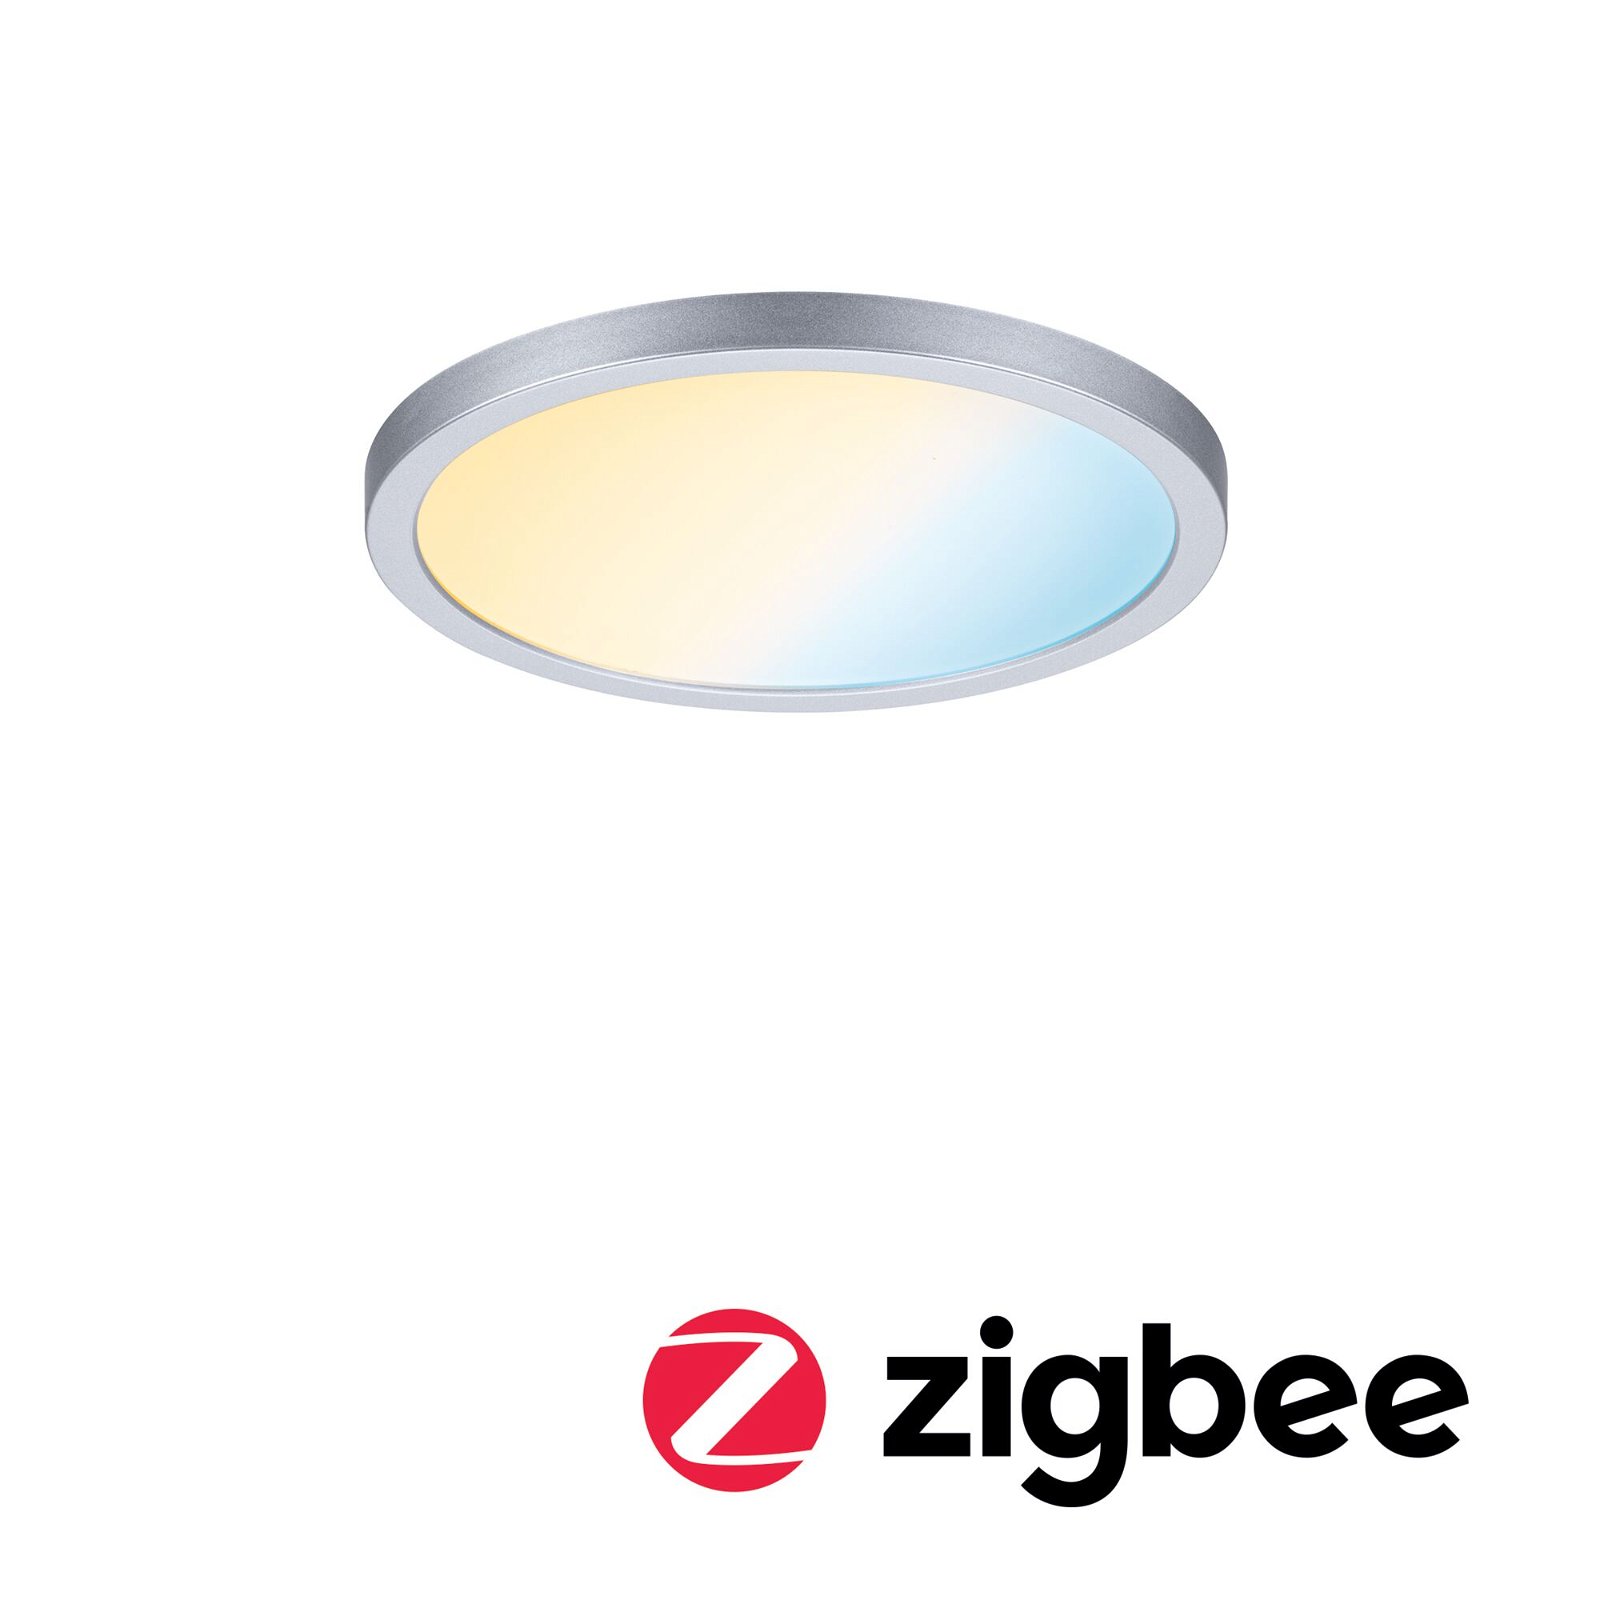 VariFit Panneau encastré LED Smart Home Zigbee 3.0 Areo IP44 rond 175mm 13W 1200lm Tunable White Chrome mat gradable